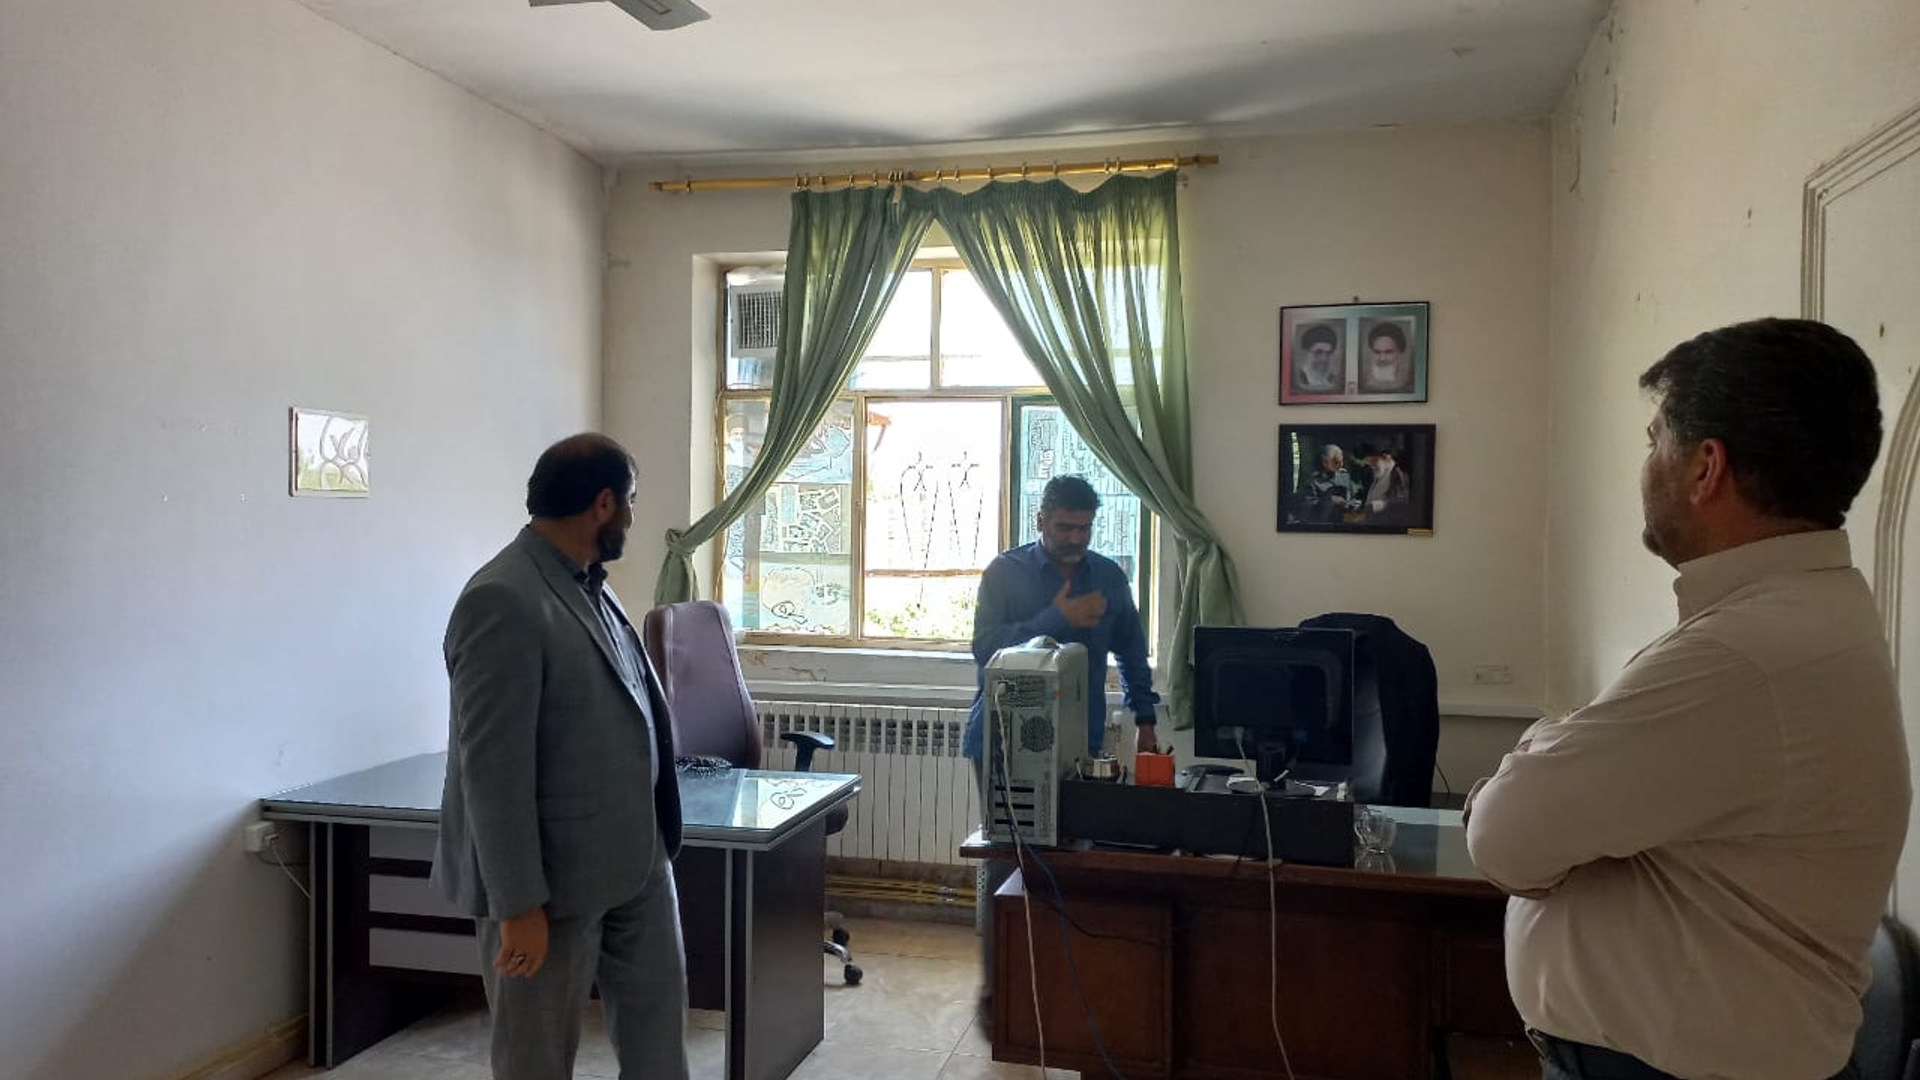 فرماندار فراهان به مناسبت هفته جهاد کشاورزی، از اداره جهاد کشاورزی شهرستان بازدید و با کارکنان این دستگاه دیدار نمود.